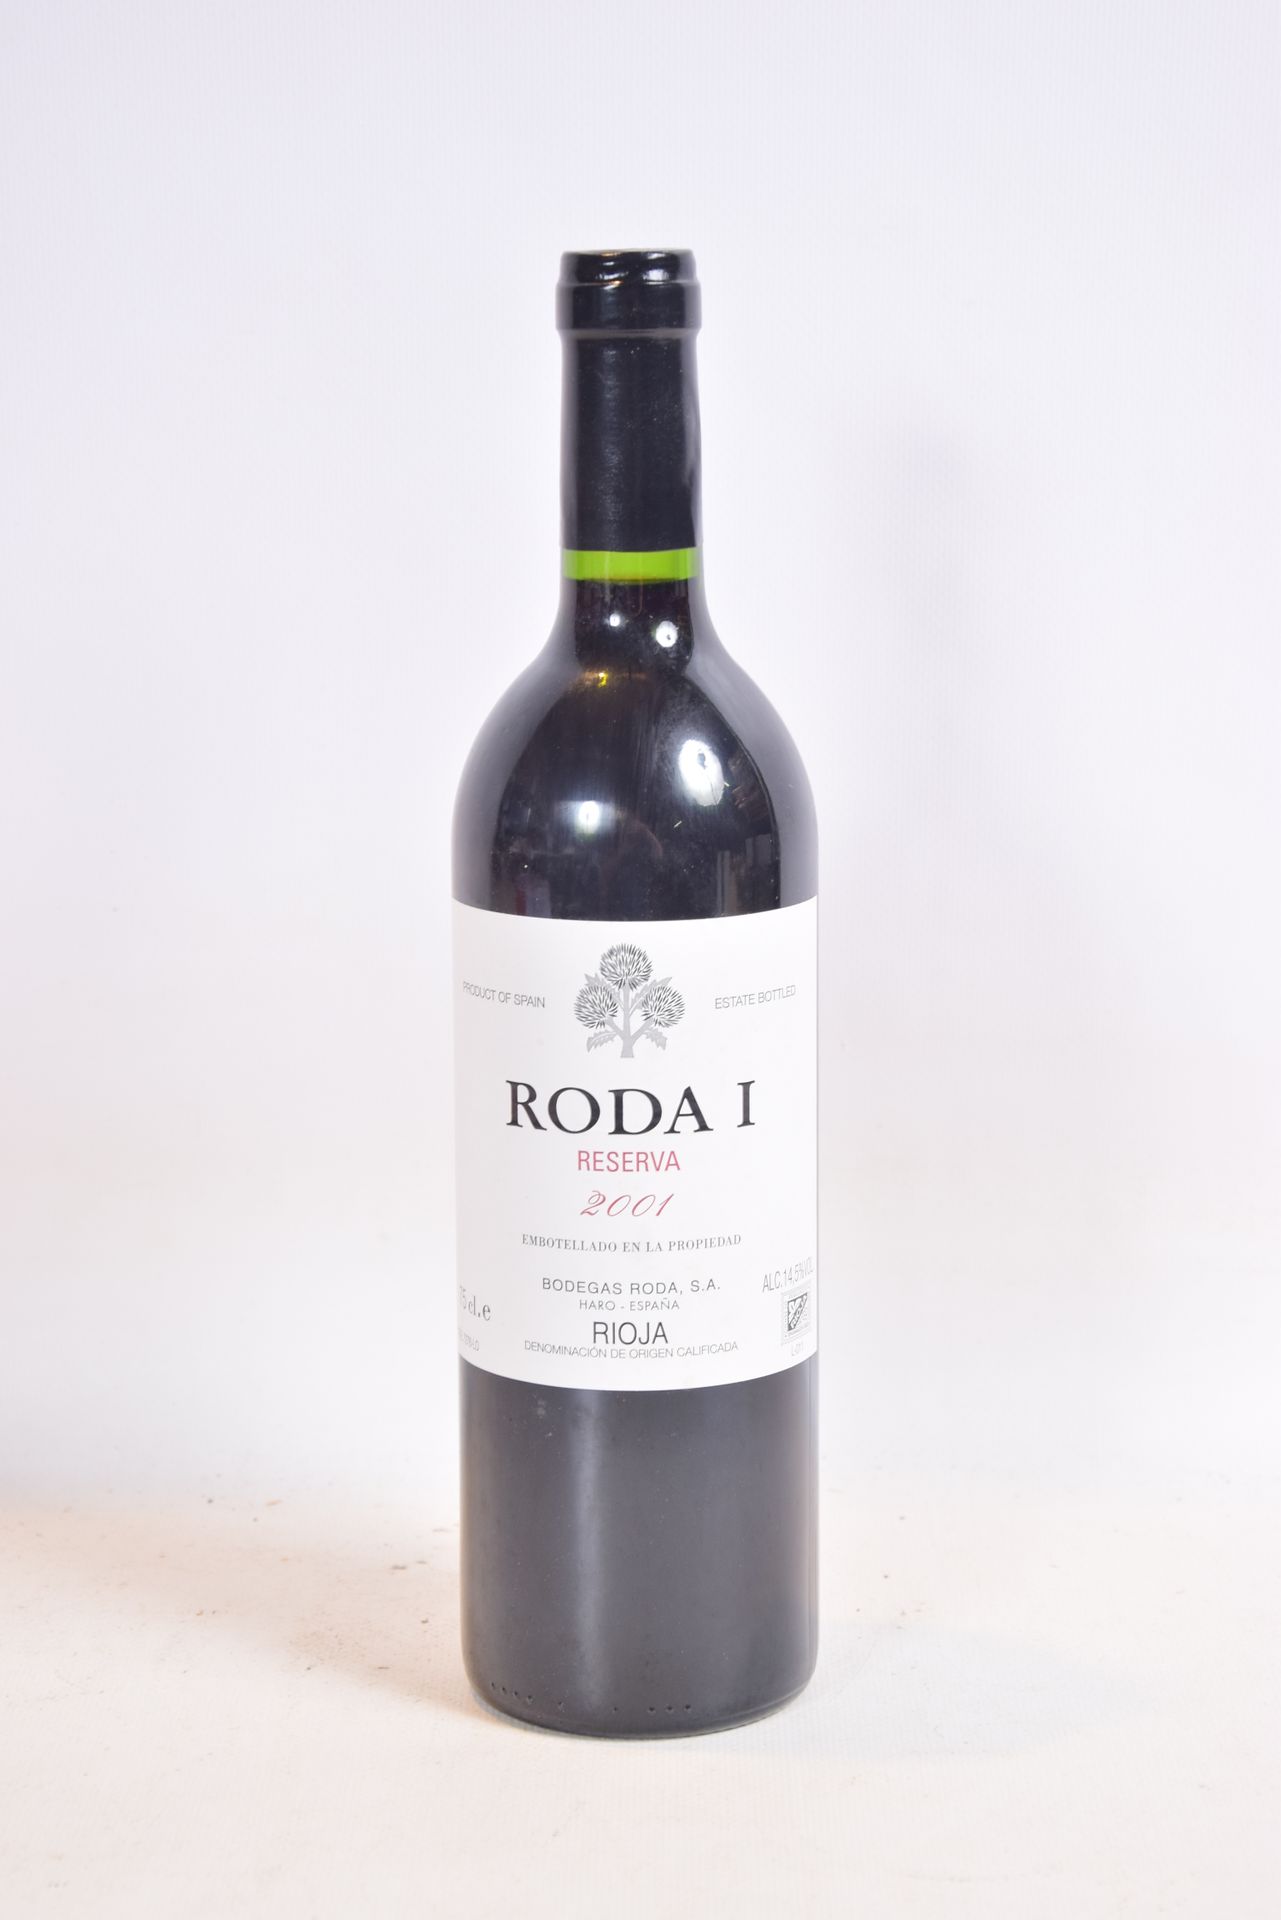 Null 1 Blle Rioja RODA 1 Reserva mise Bodegas Roda (Spanien) 2001

	Präsentation&hellip;